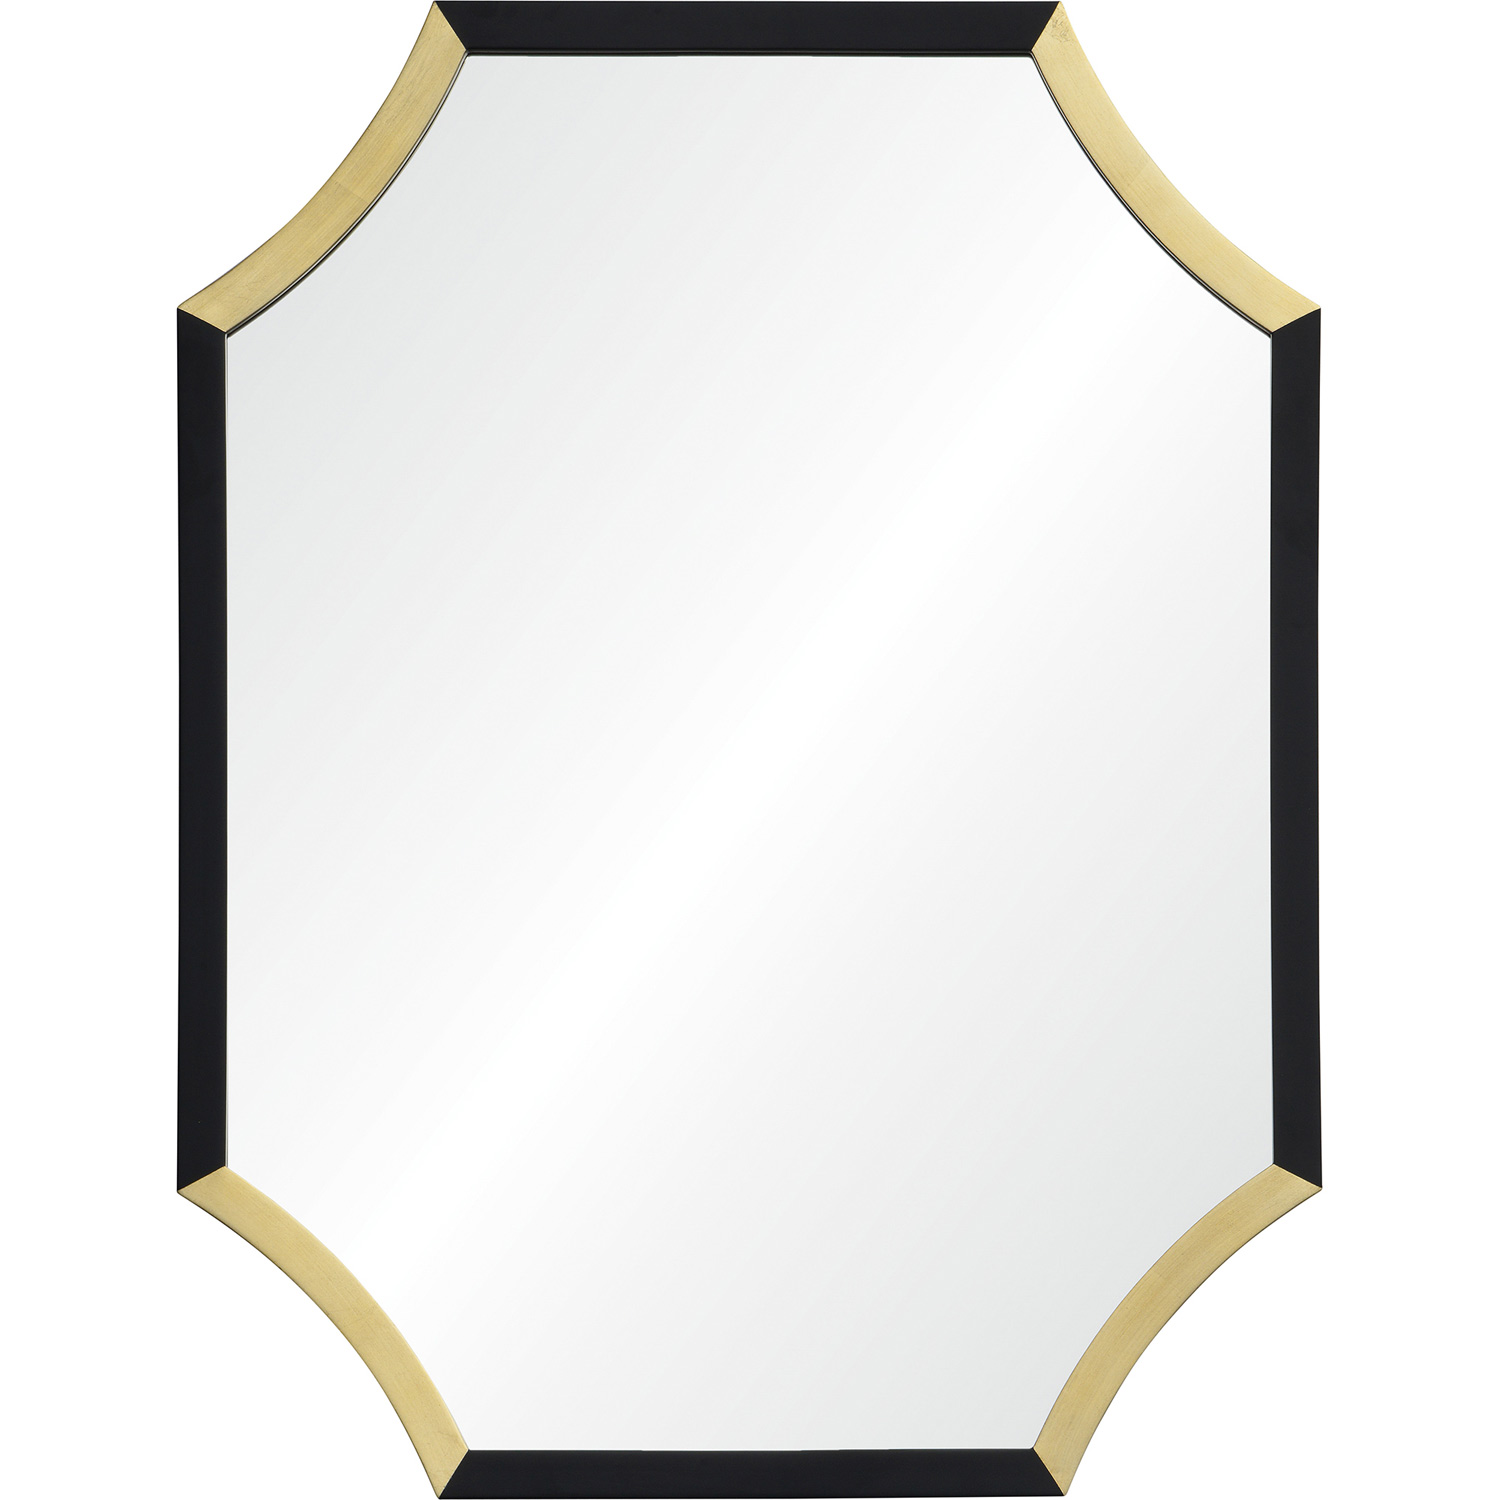 Ren-Wil Harlowe Octagon Mirror - Gold Leaf/Black